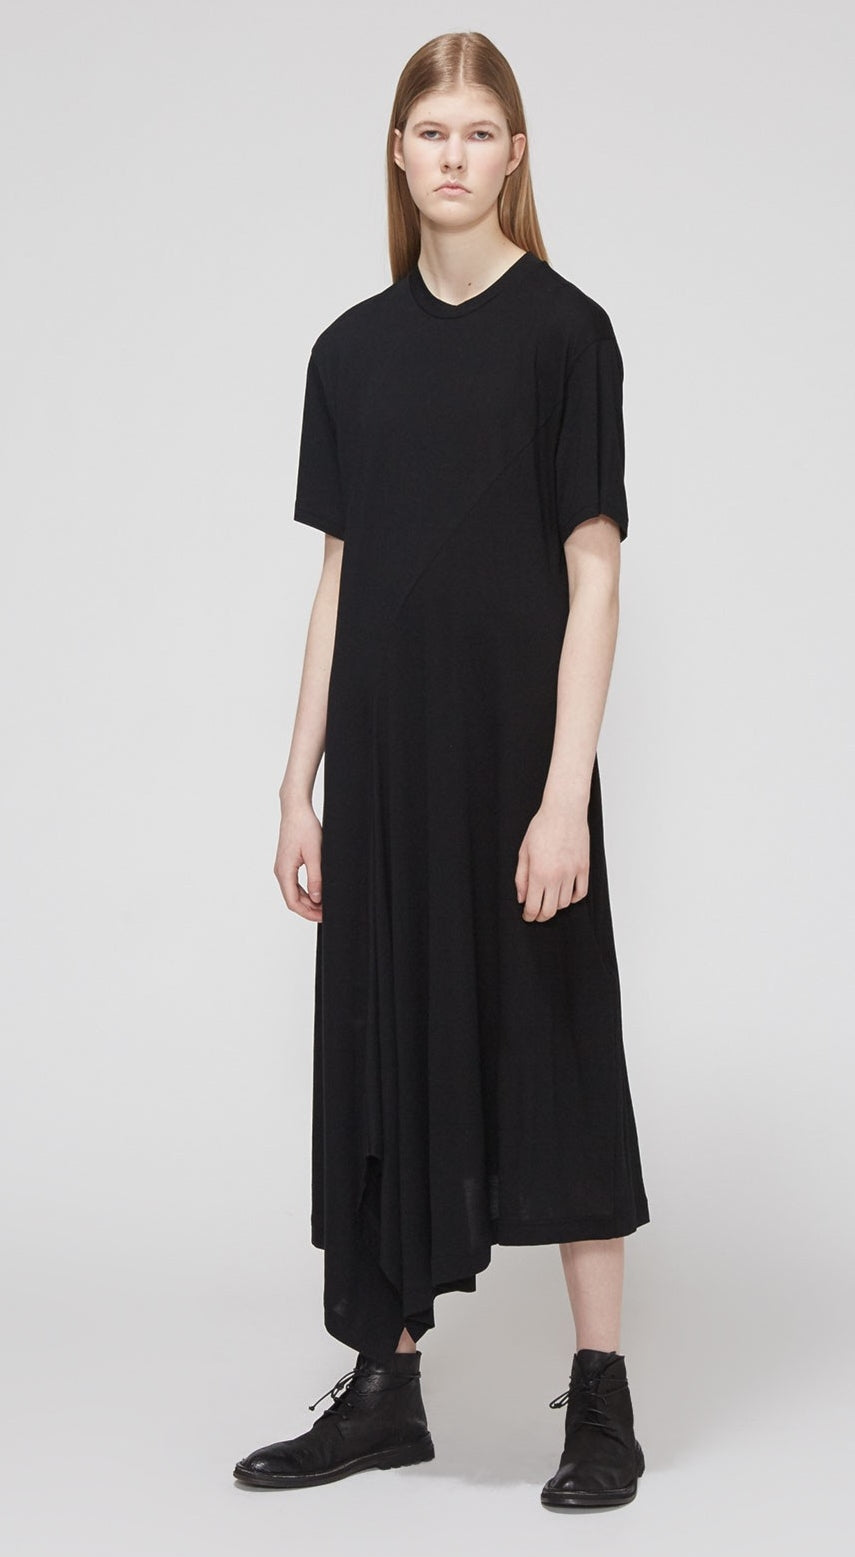 YHJI YAMAMTO Asymmetrical Hem Dress / Plus Size